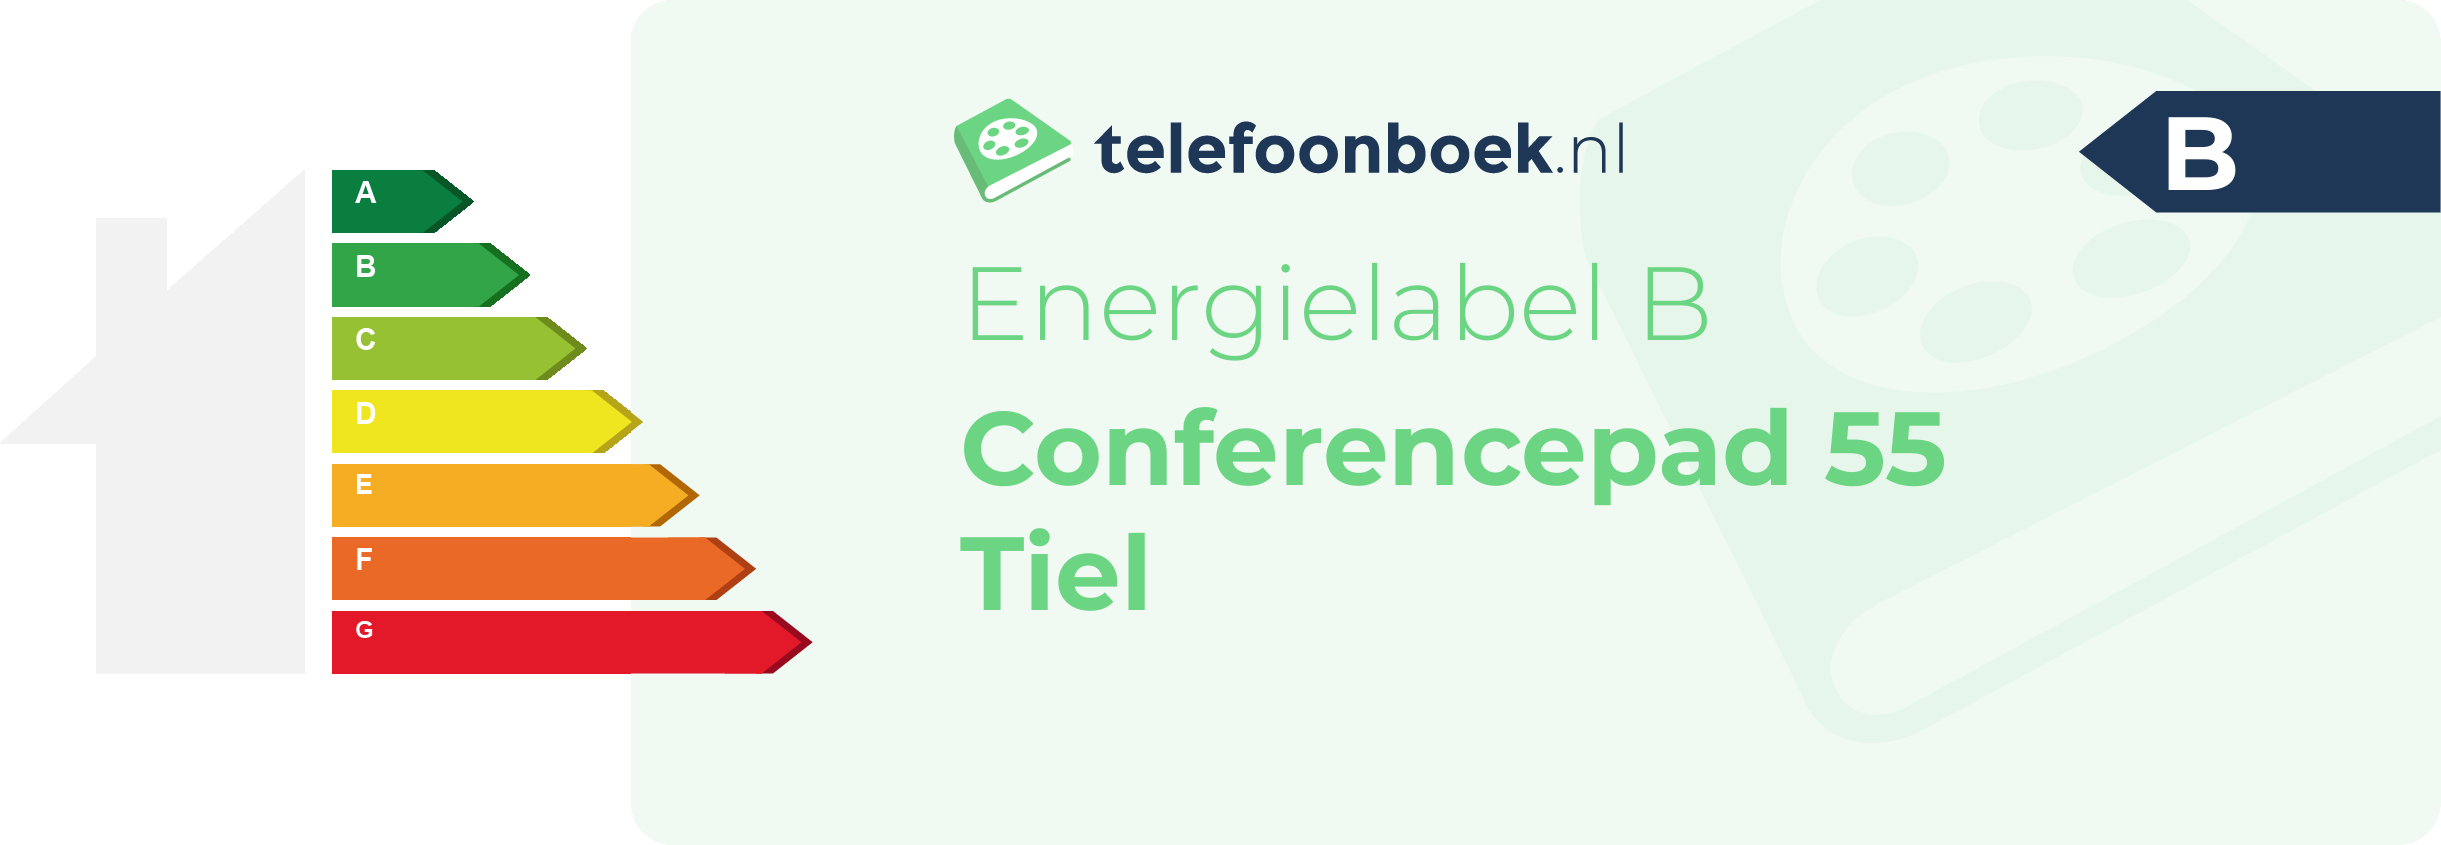 Energielabel Conferencepad 55 Tiel